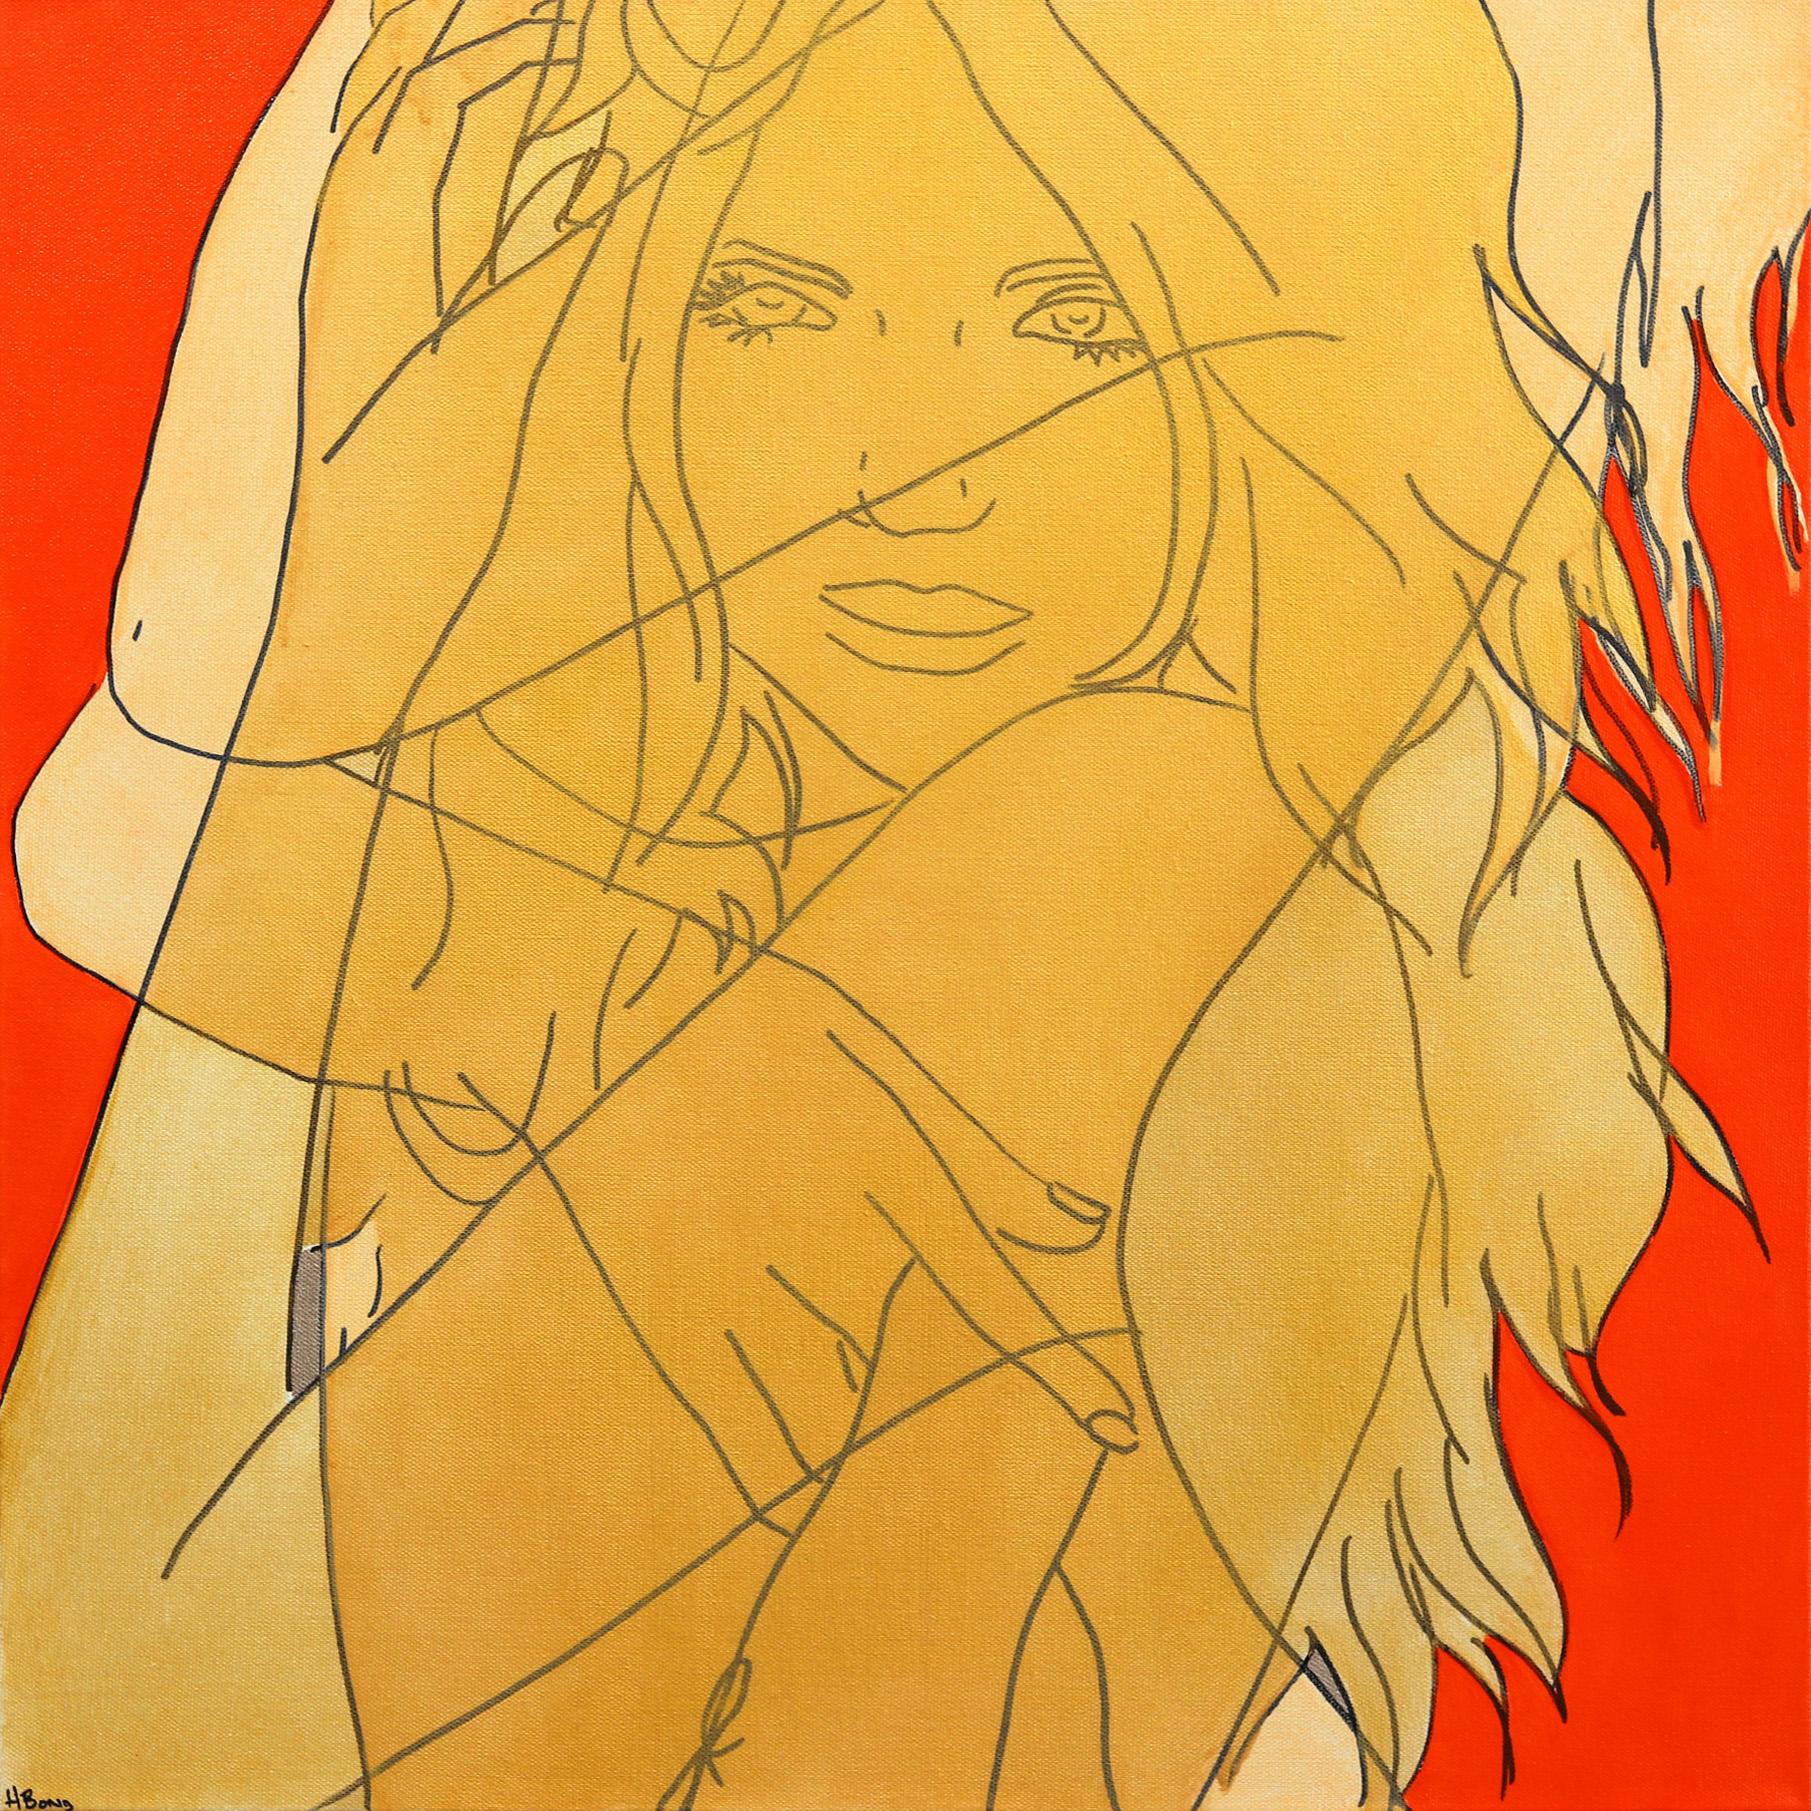 Untitled (Fire III) - Figuratives Porträt einer roten und gelben Frau, Pop-Art-Gemälde